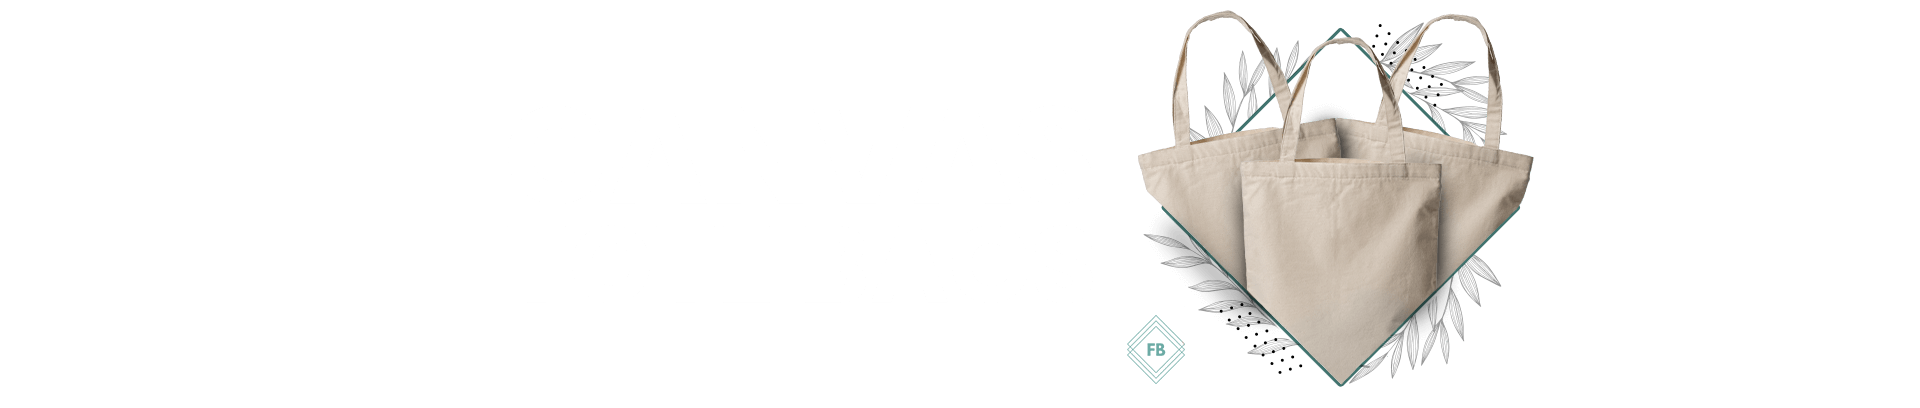 canvas tote bags Fiubags EUA